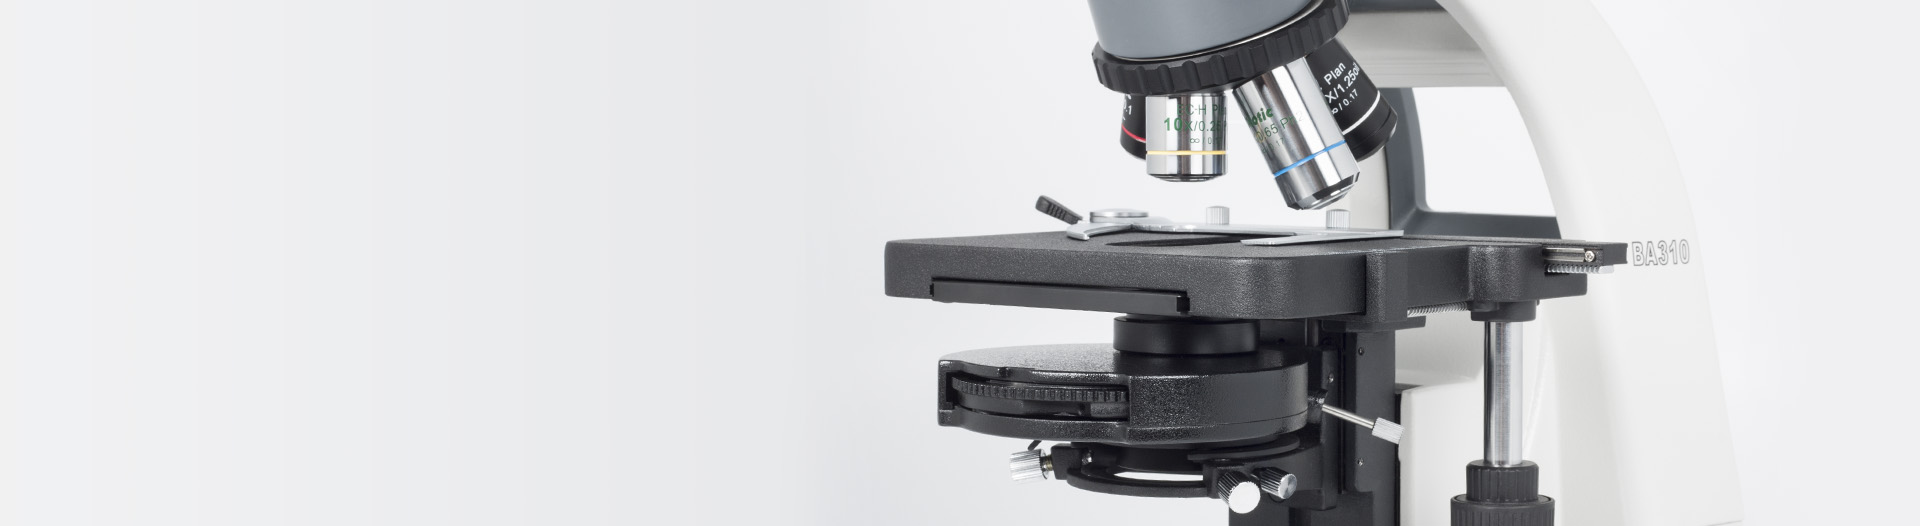 BA310 microscope Contast Methods